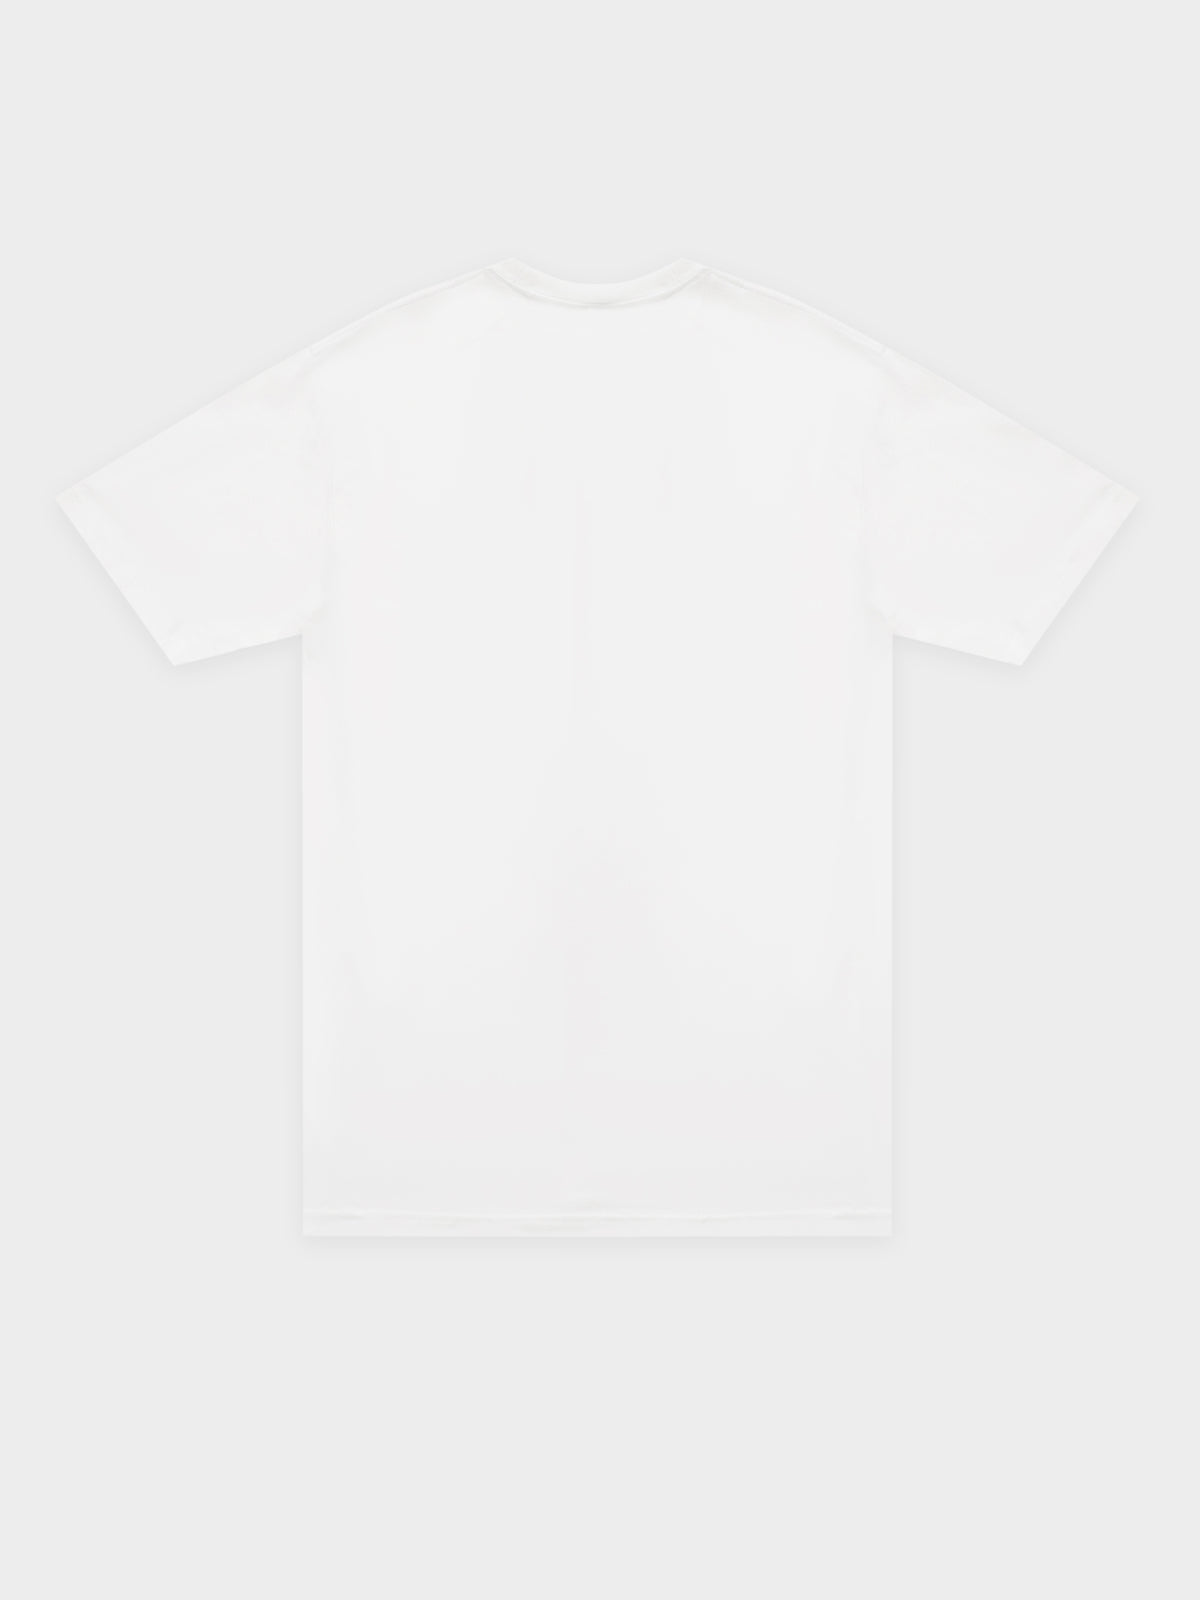 Longview T-Shirt in White